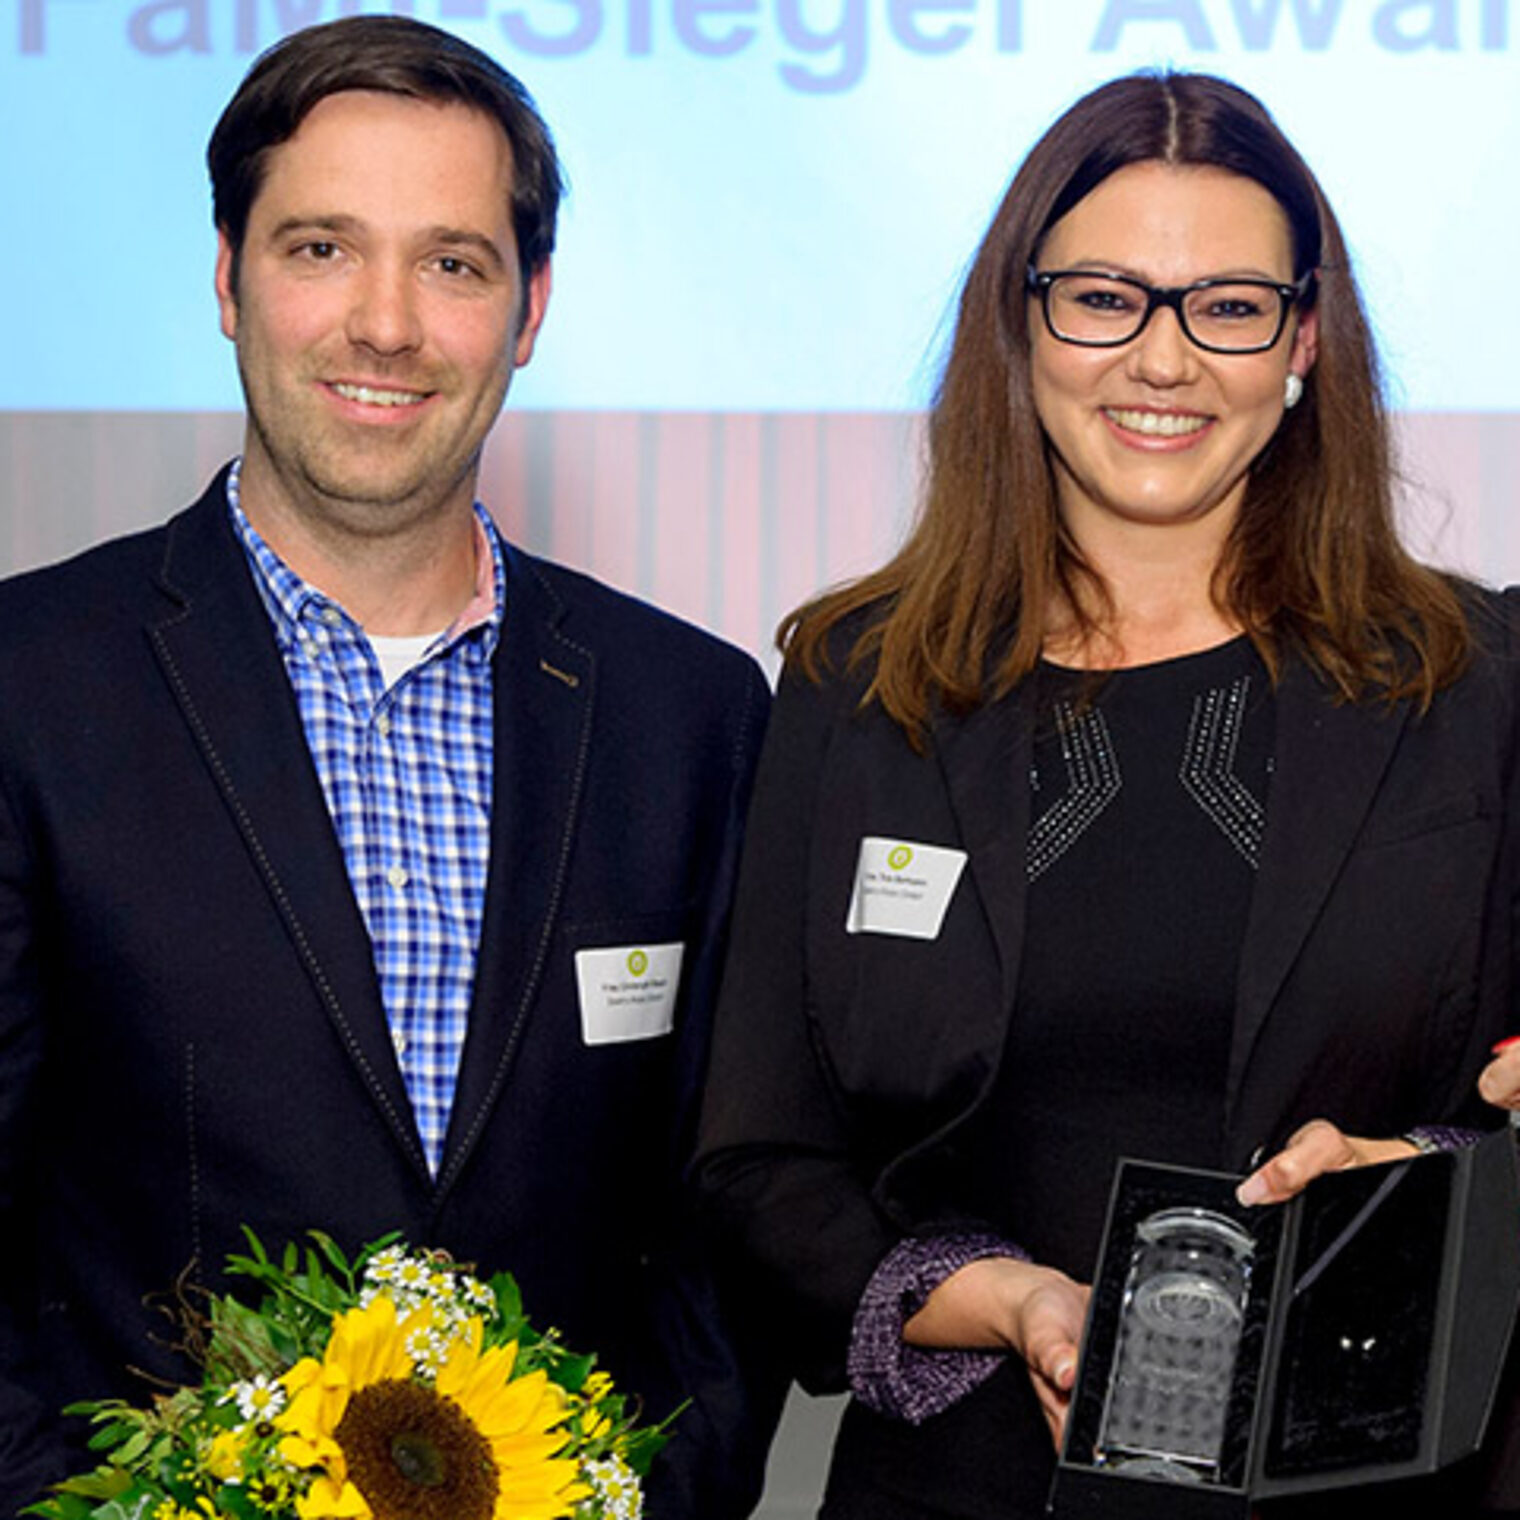 Bei der Elektro-Rosin GmbH aus Uelzen wird Familienfreundlichkeit gelebt. Hierfür bekam der Betrieb 2015 den FaMi-Award.